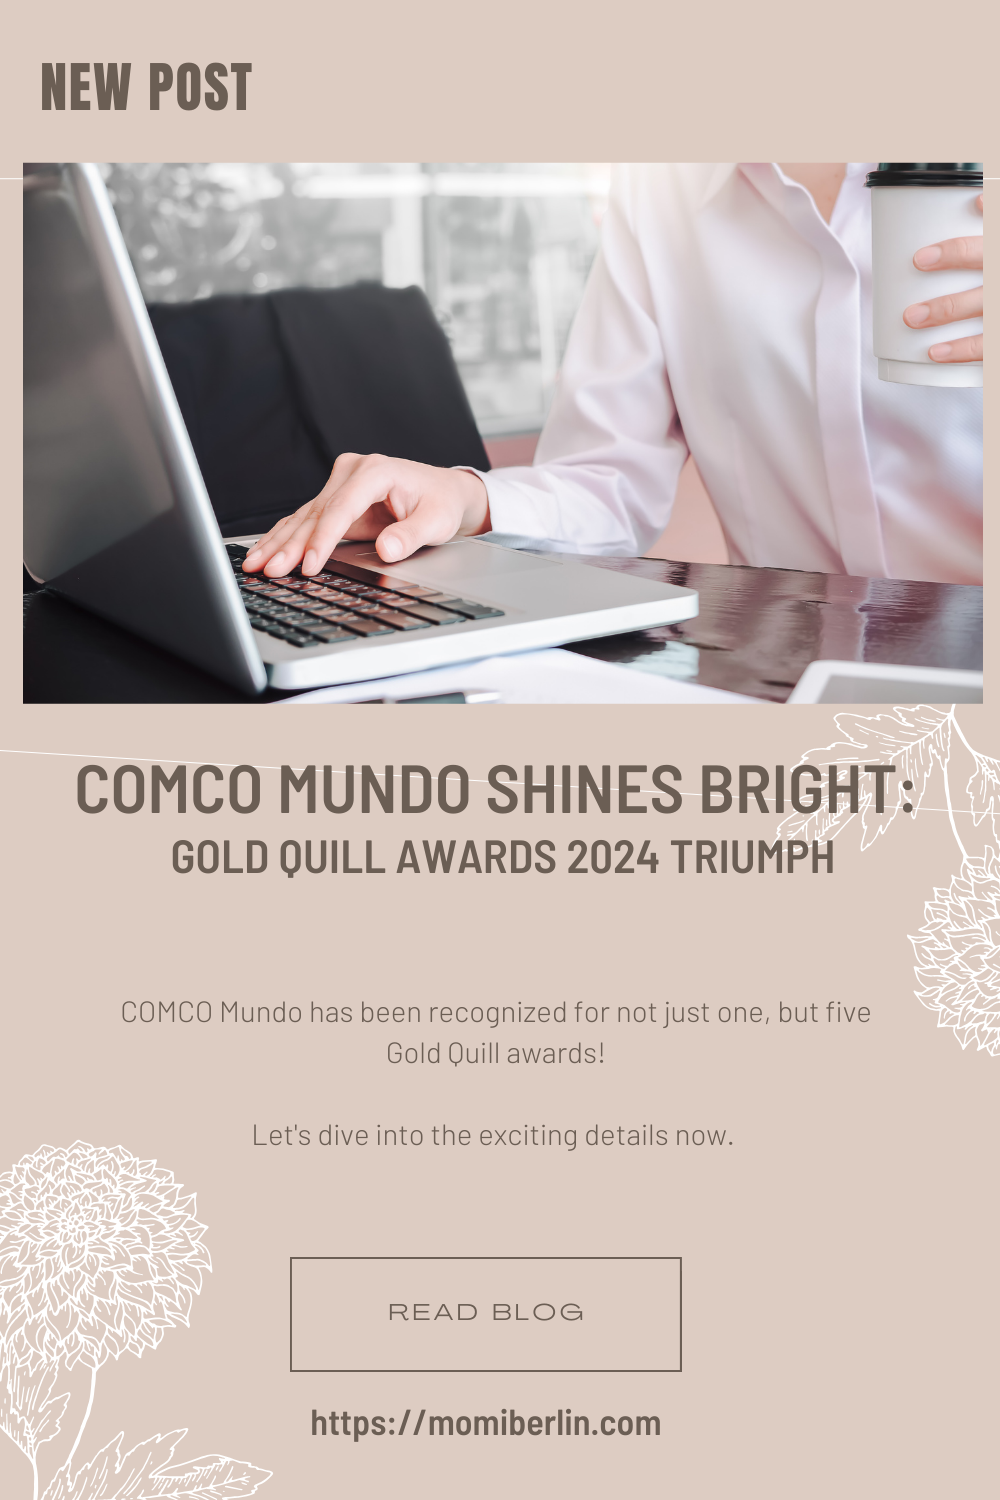 COMCO Mundo Shines Bright: Gold Quill Awards 2024 Triumph